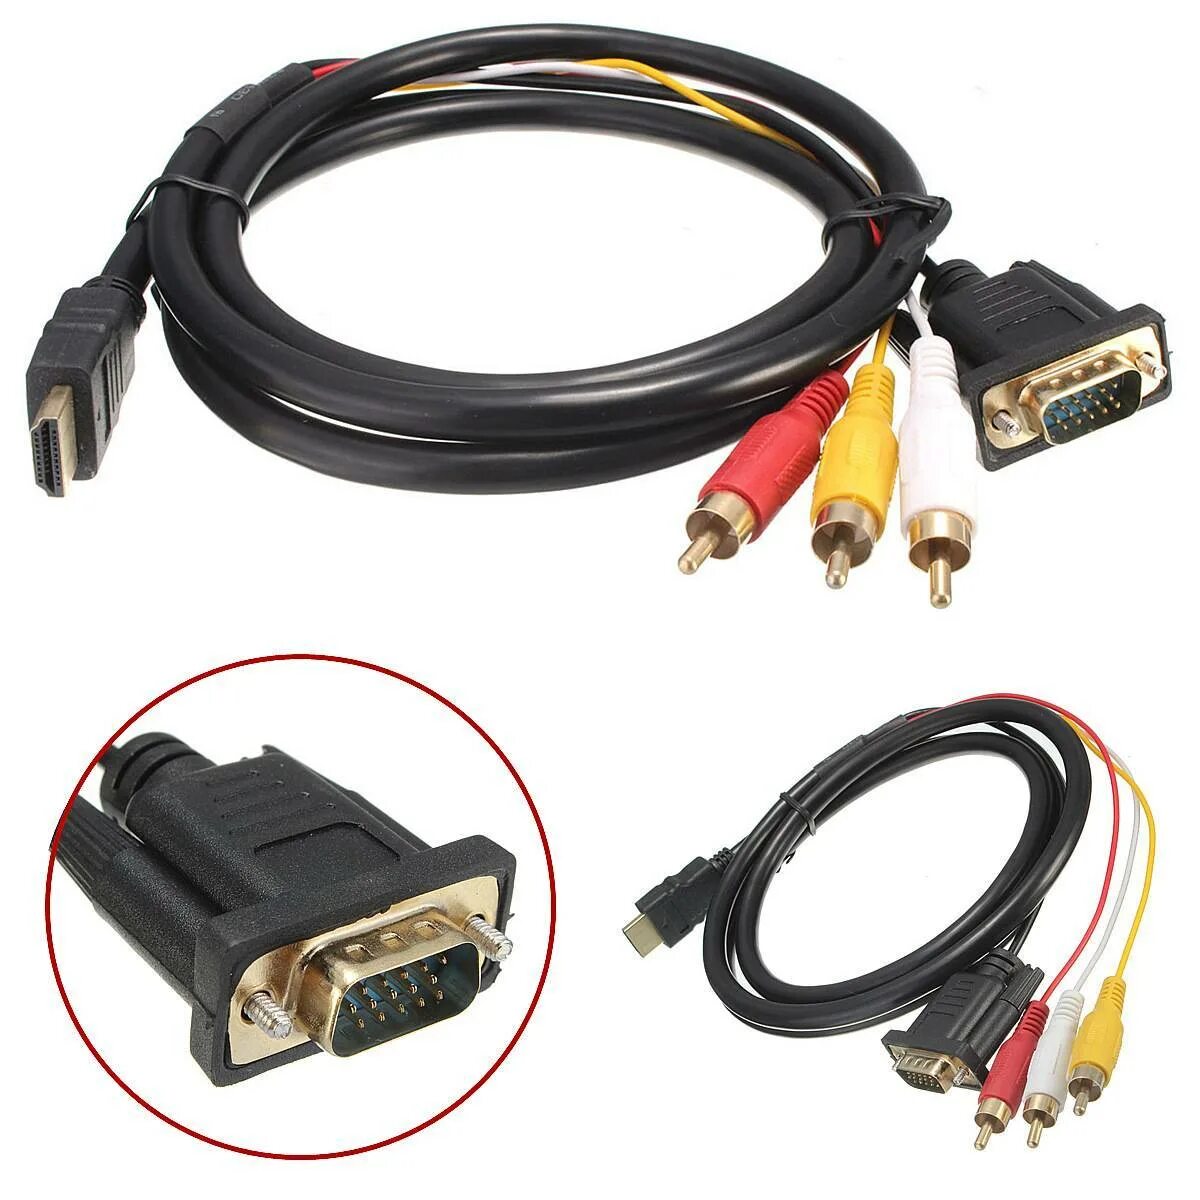 Cable соединительный кабель VGA HDMI 2. Кабель HDMI- DVI+2 RCA. Кабель 3 RCA - VGA для монитора. Переходник VGA-3rca для подключения монитора. Видео кабель подключение